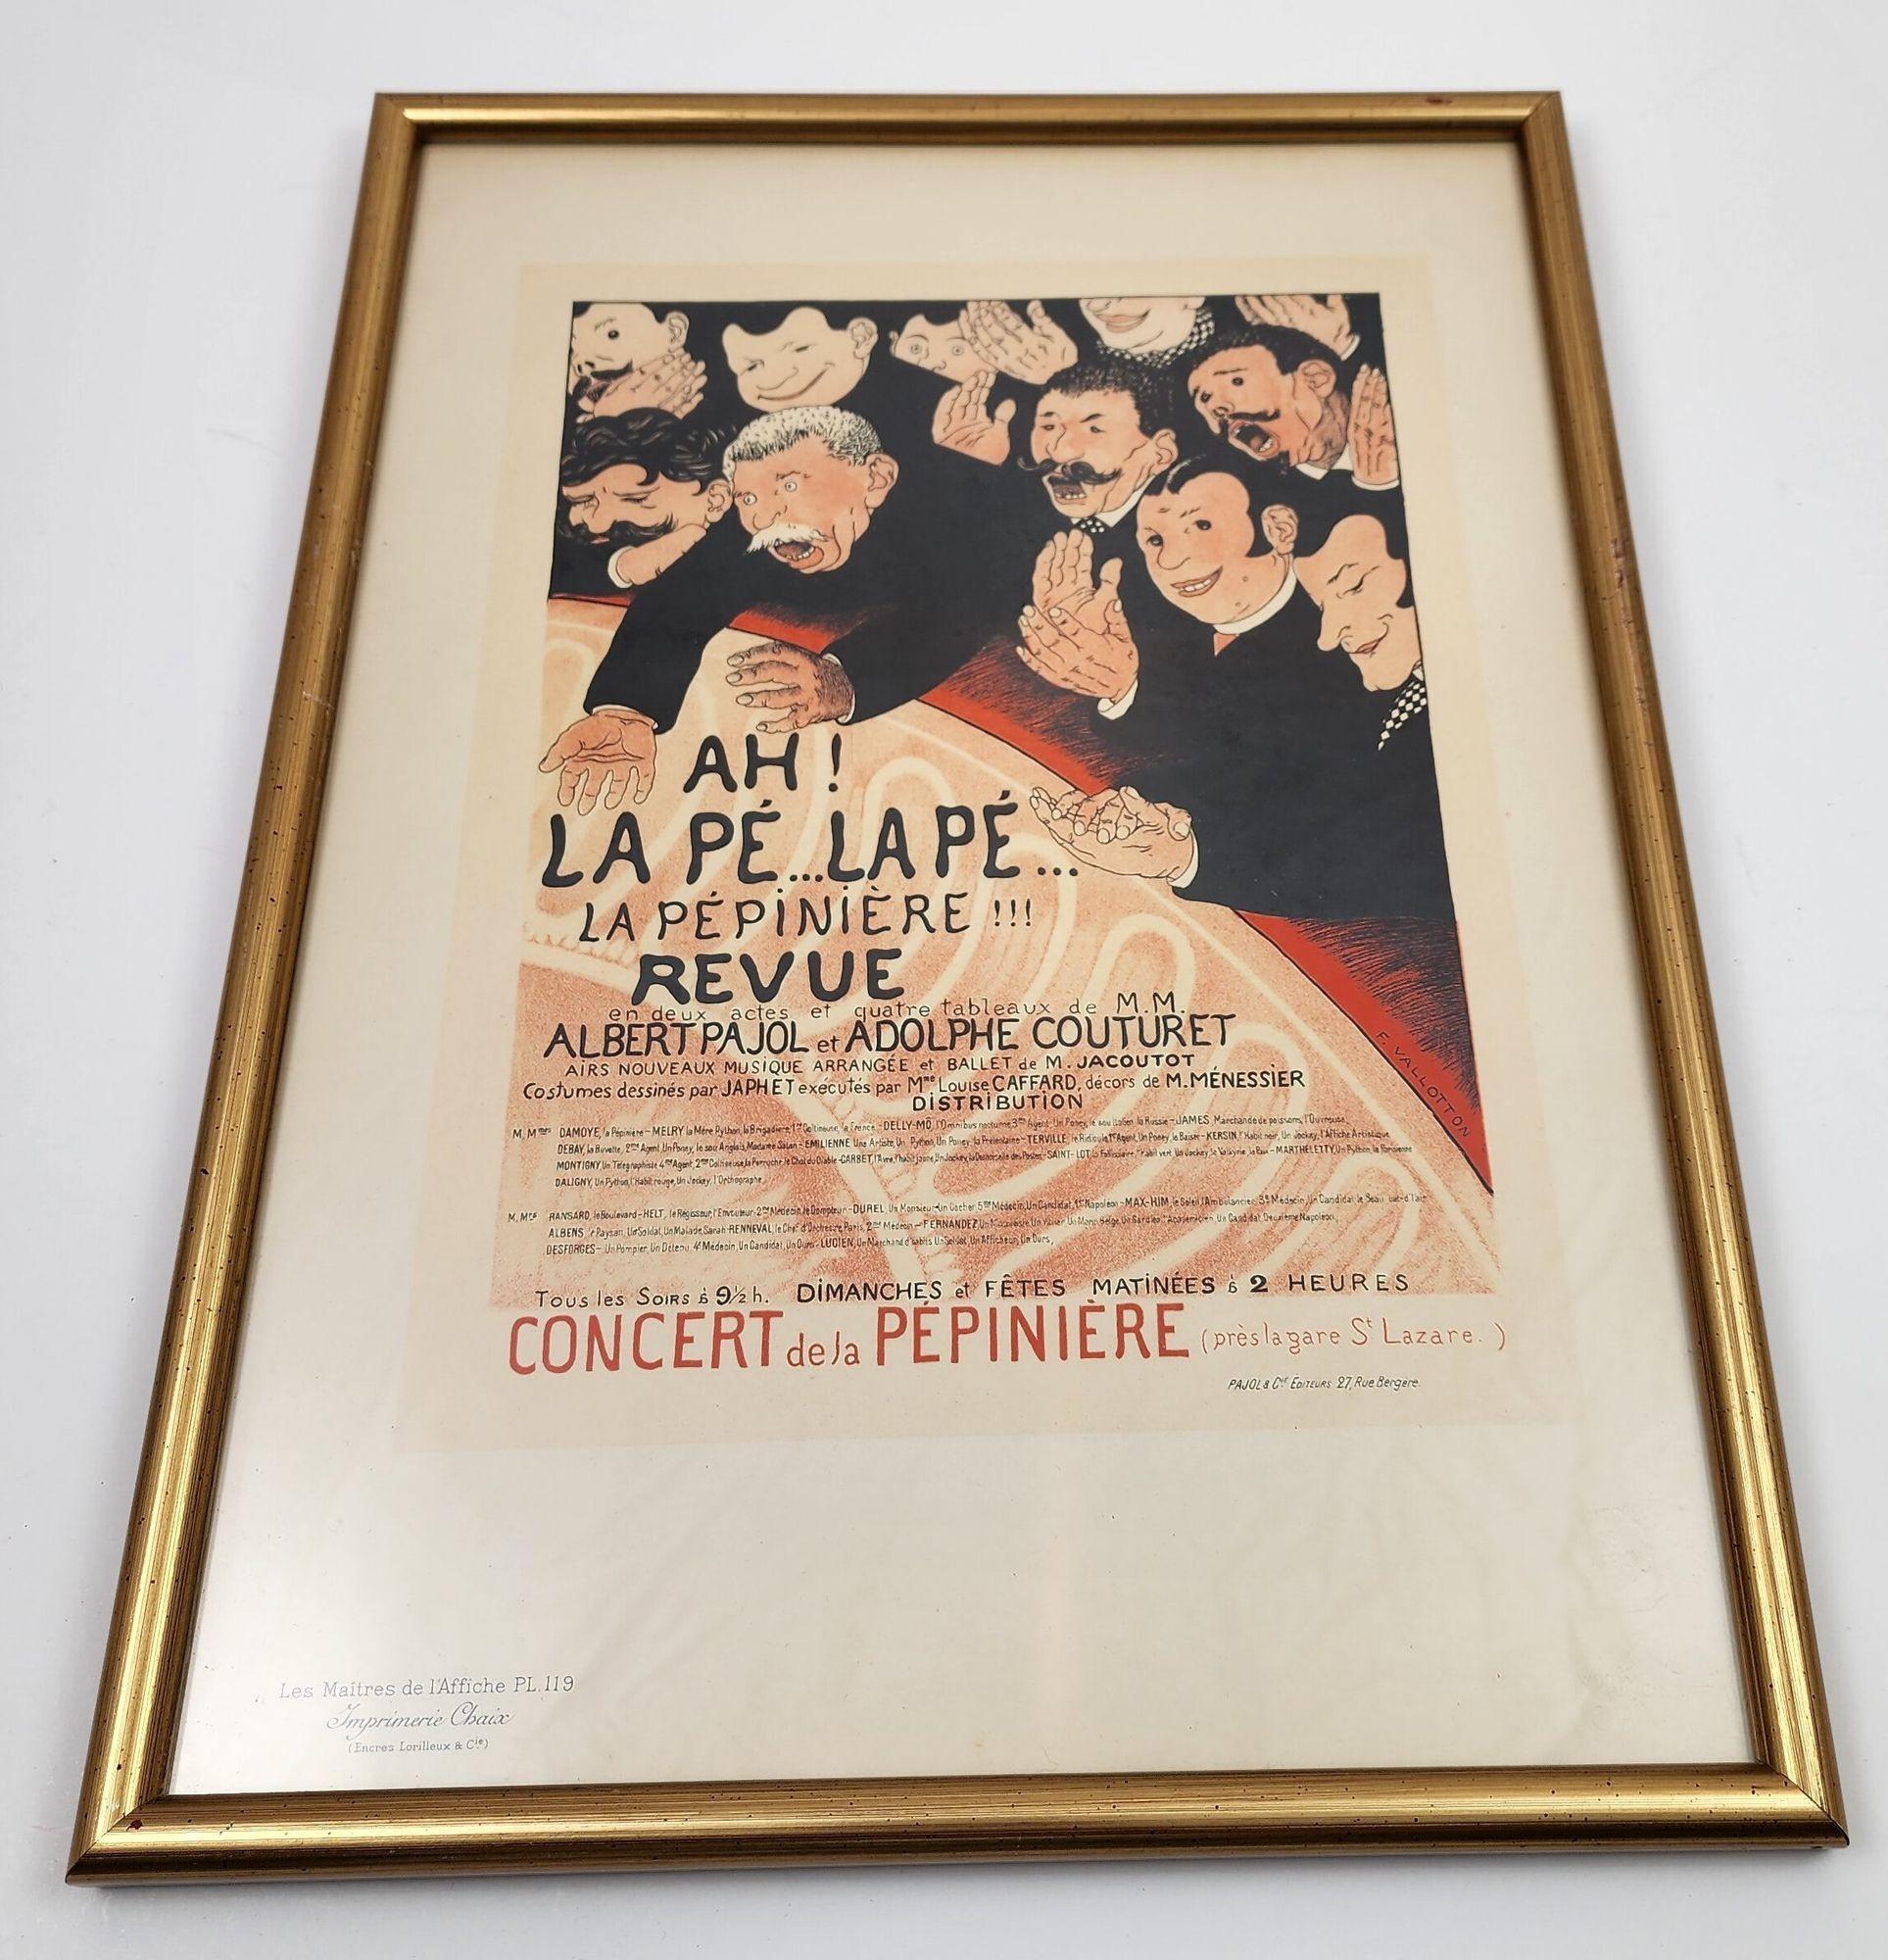 20th Century Vallotton French Poster by Les Maîtres de l’Affiche Ah la Pé la Pé la Pépinierè For Sale